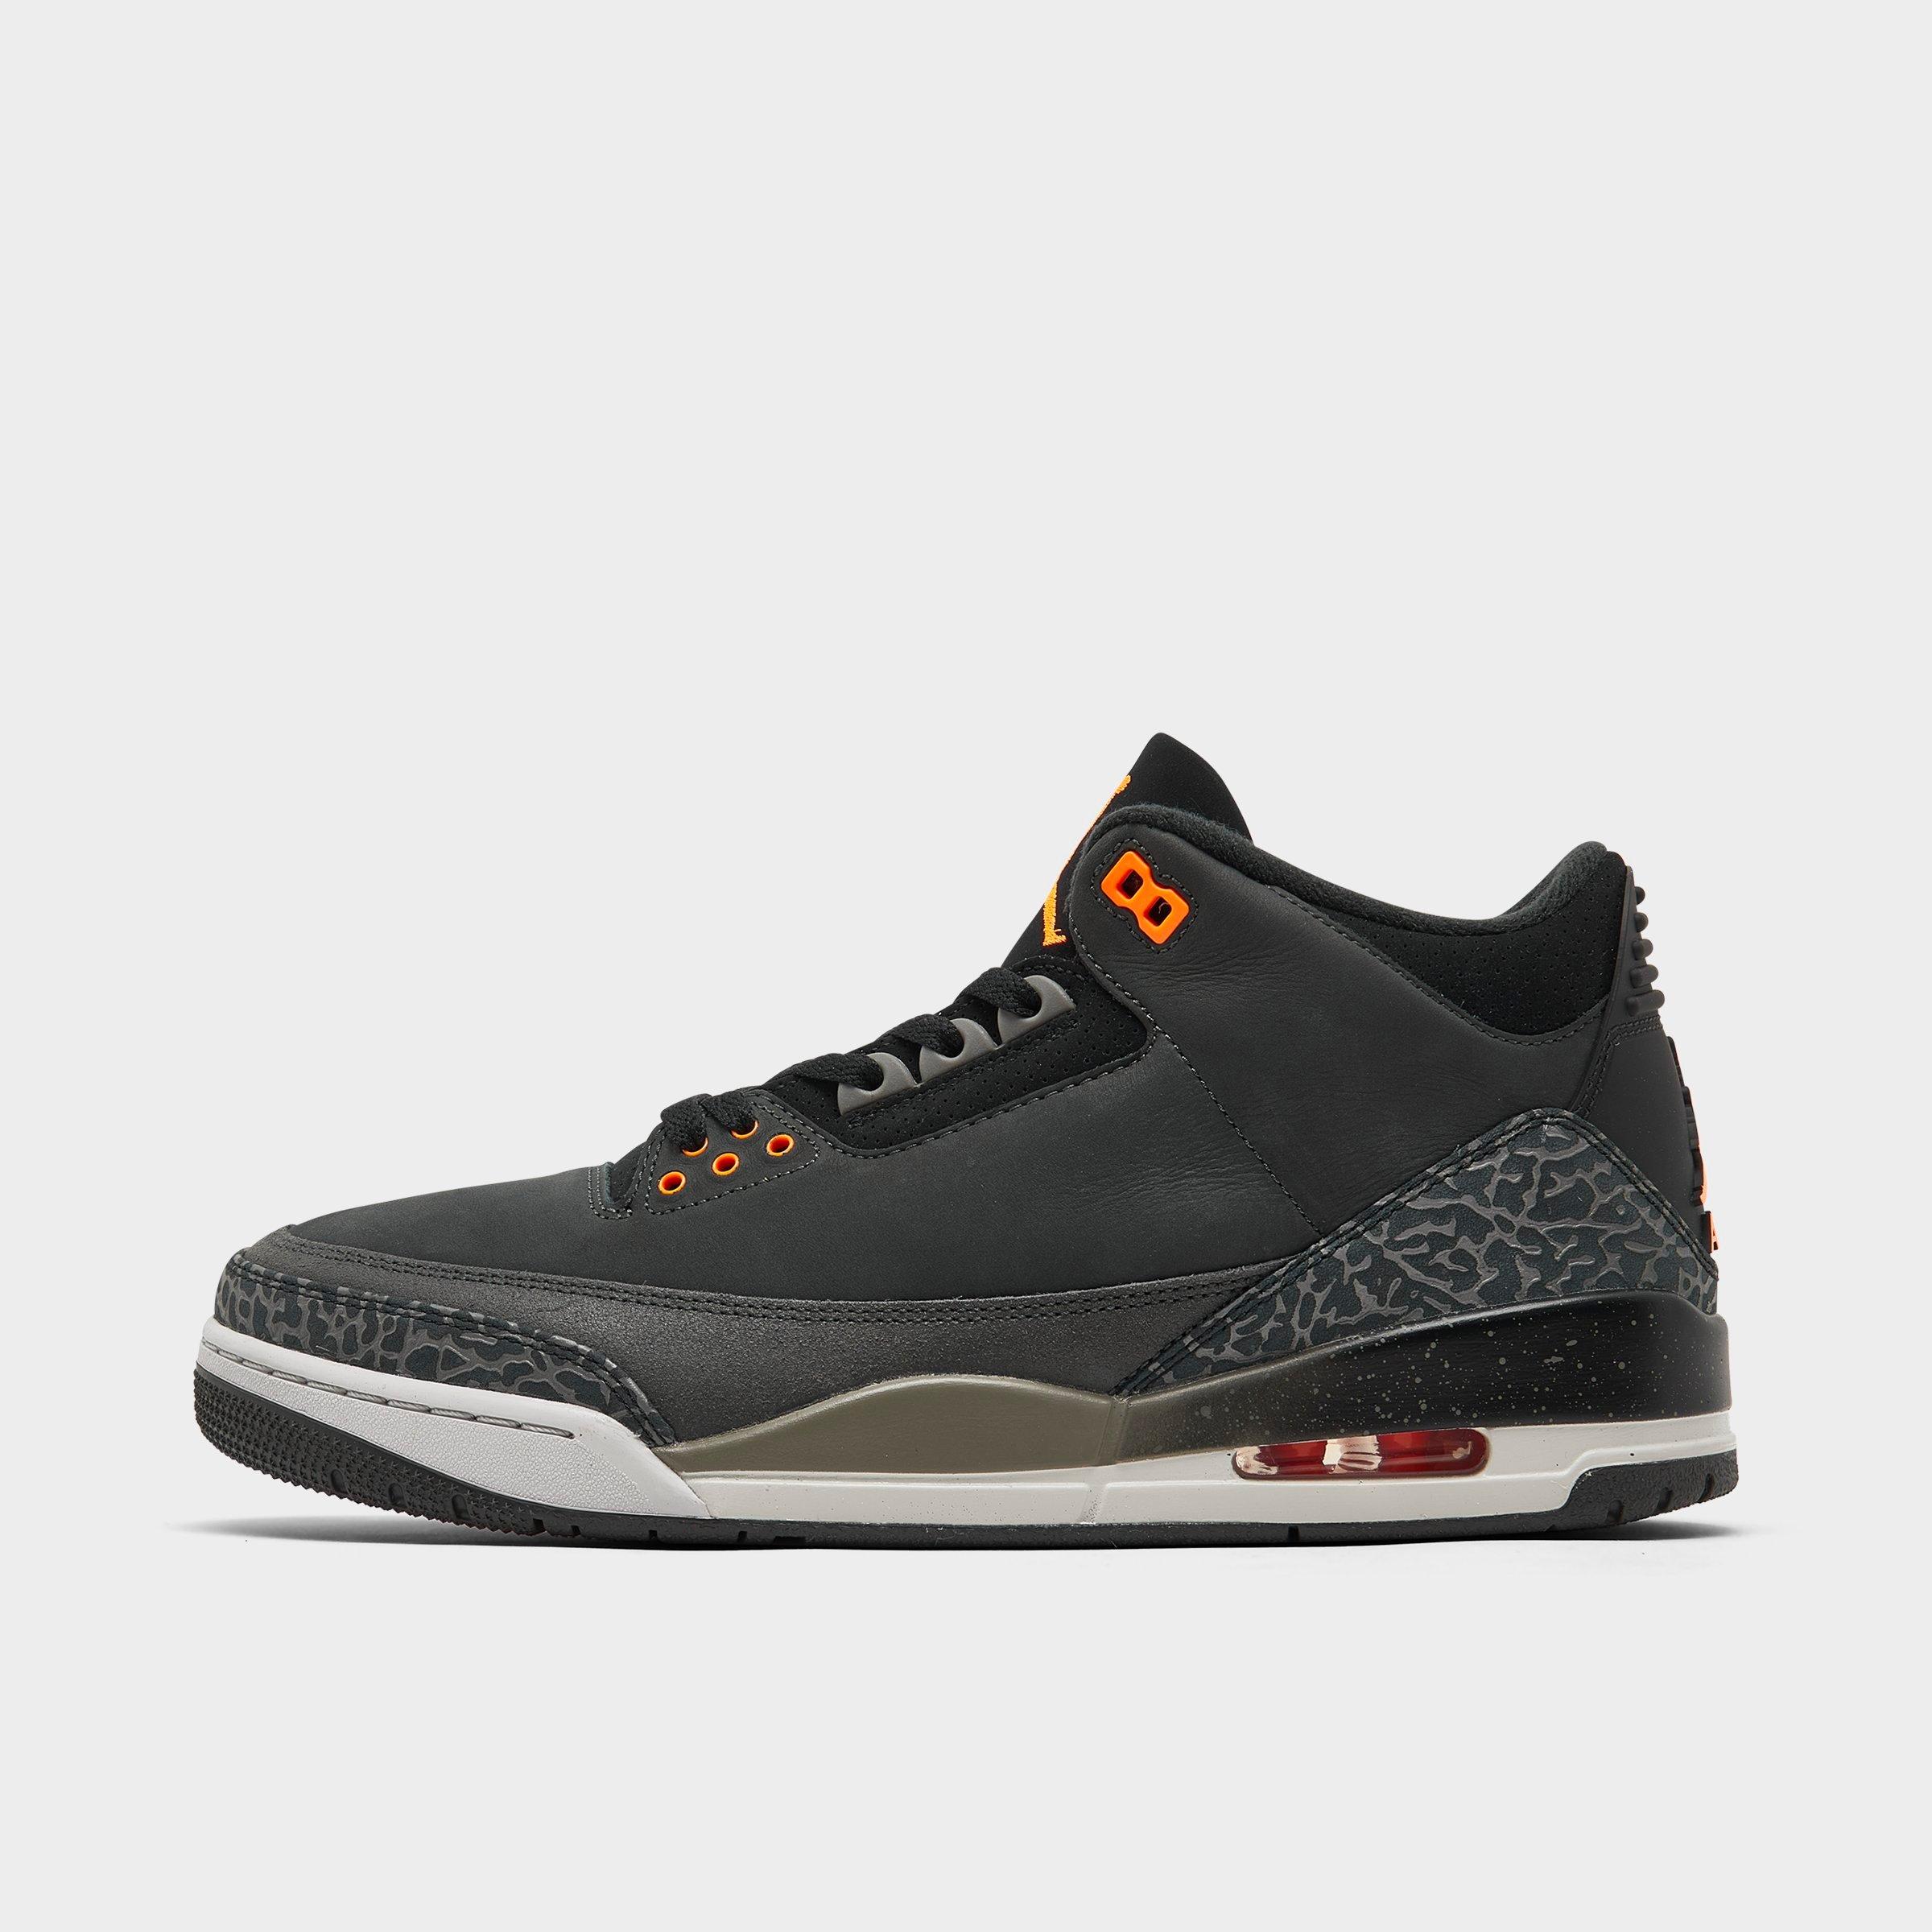 Shop Nike Jordan Air Retro 3 Basketball Shoes In Night Stadium/total Orange/black